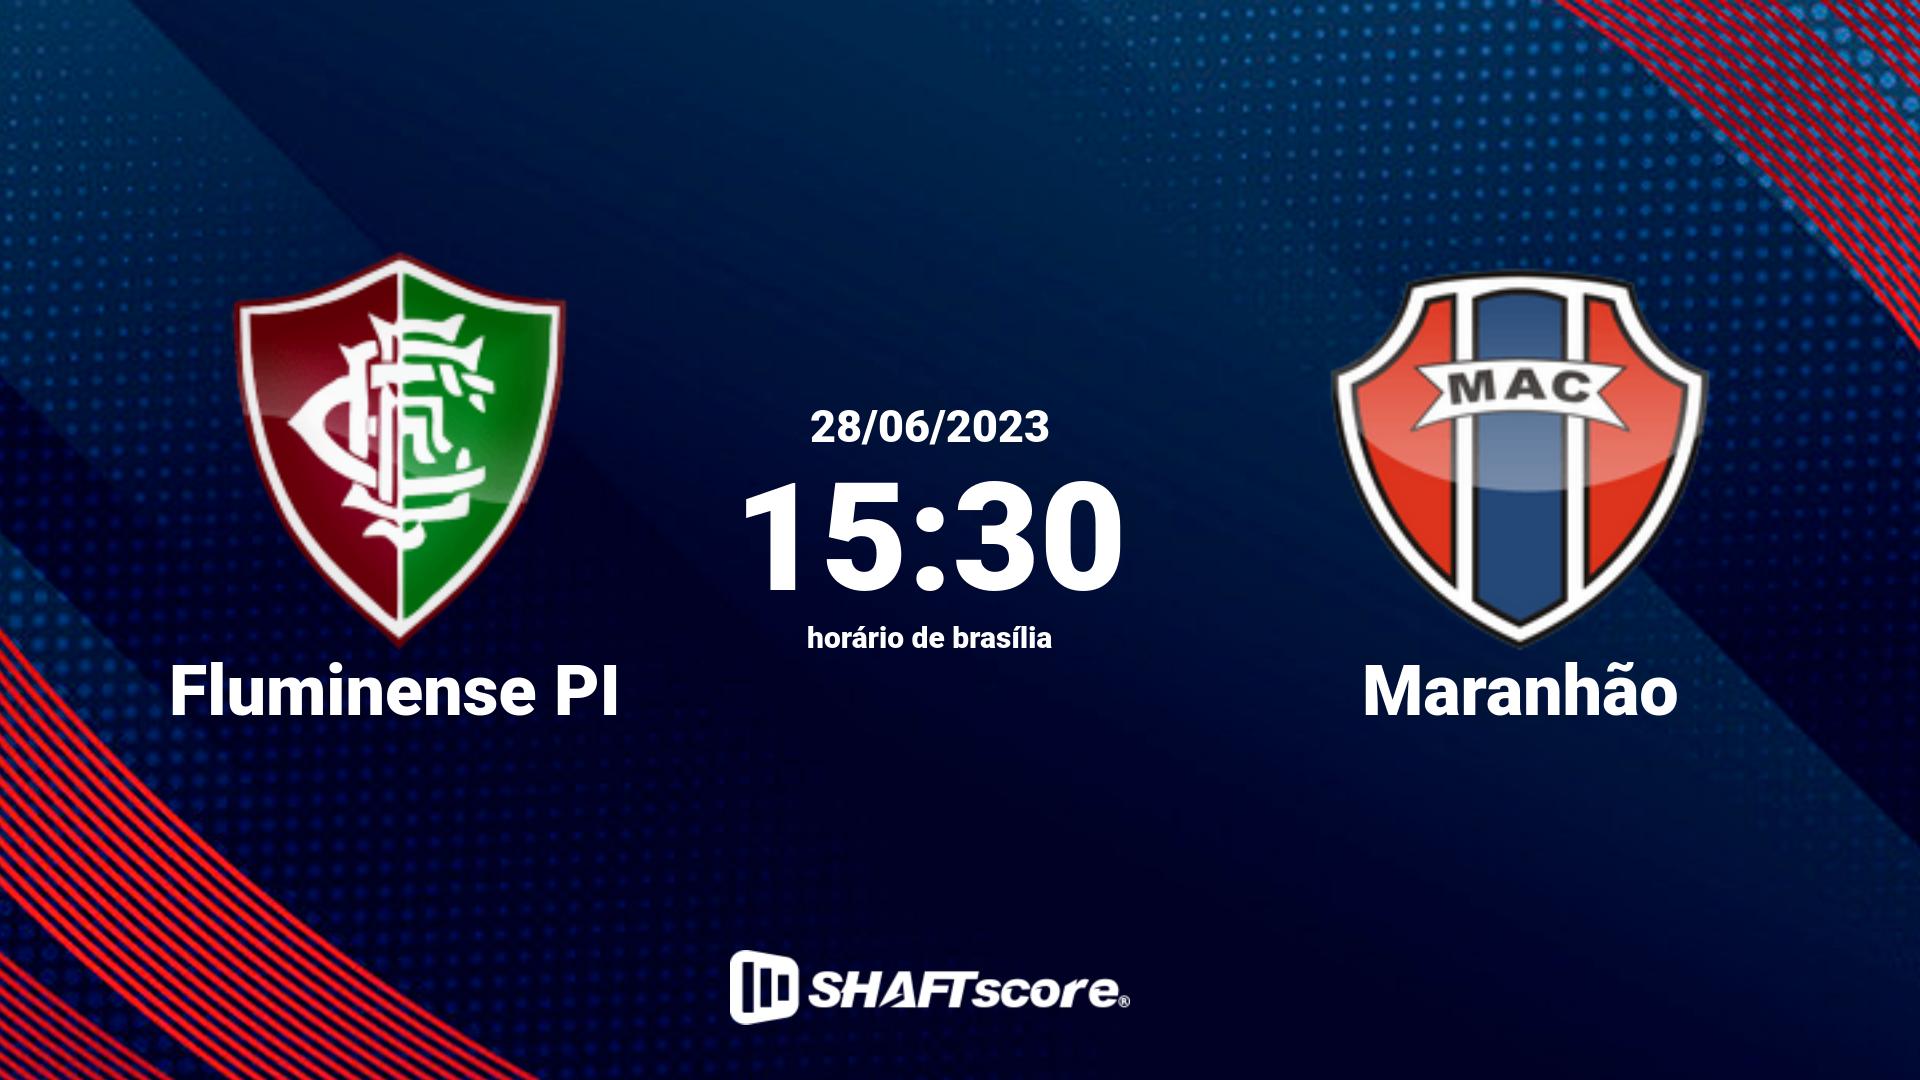 Estatísticas do jogo Fluminense PI vs Maranhão 28.06 15:30